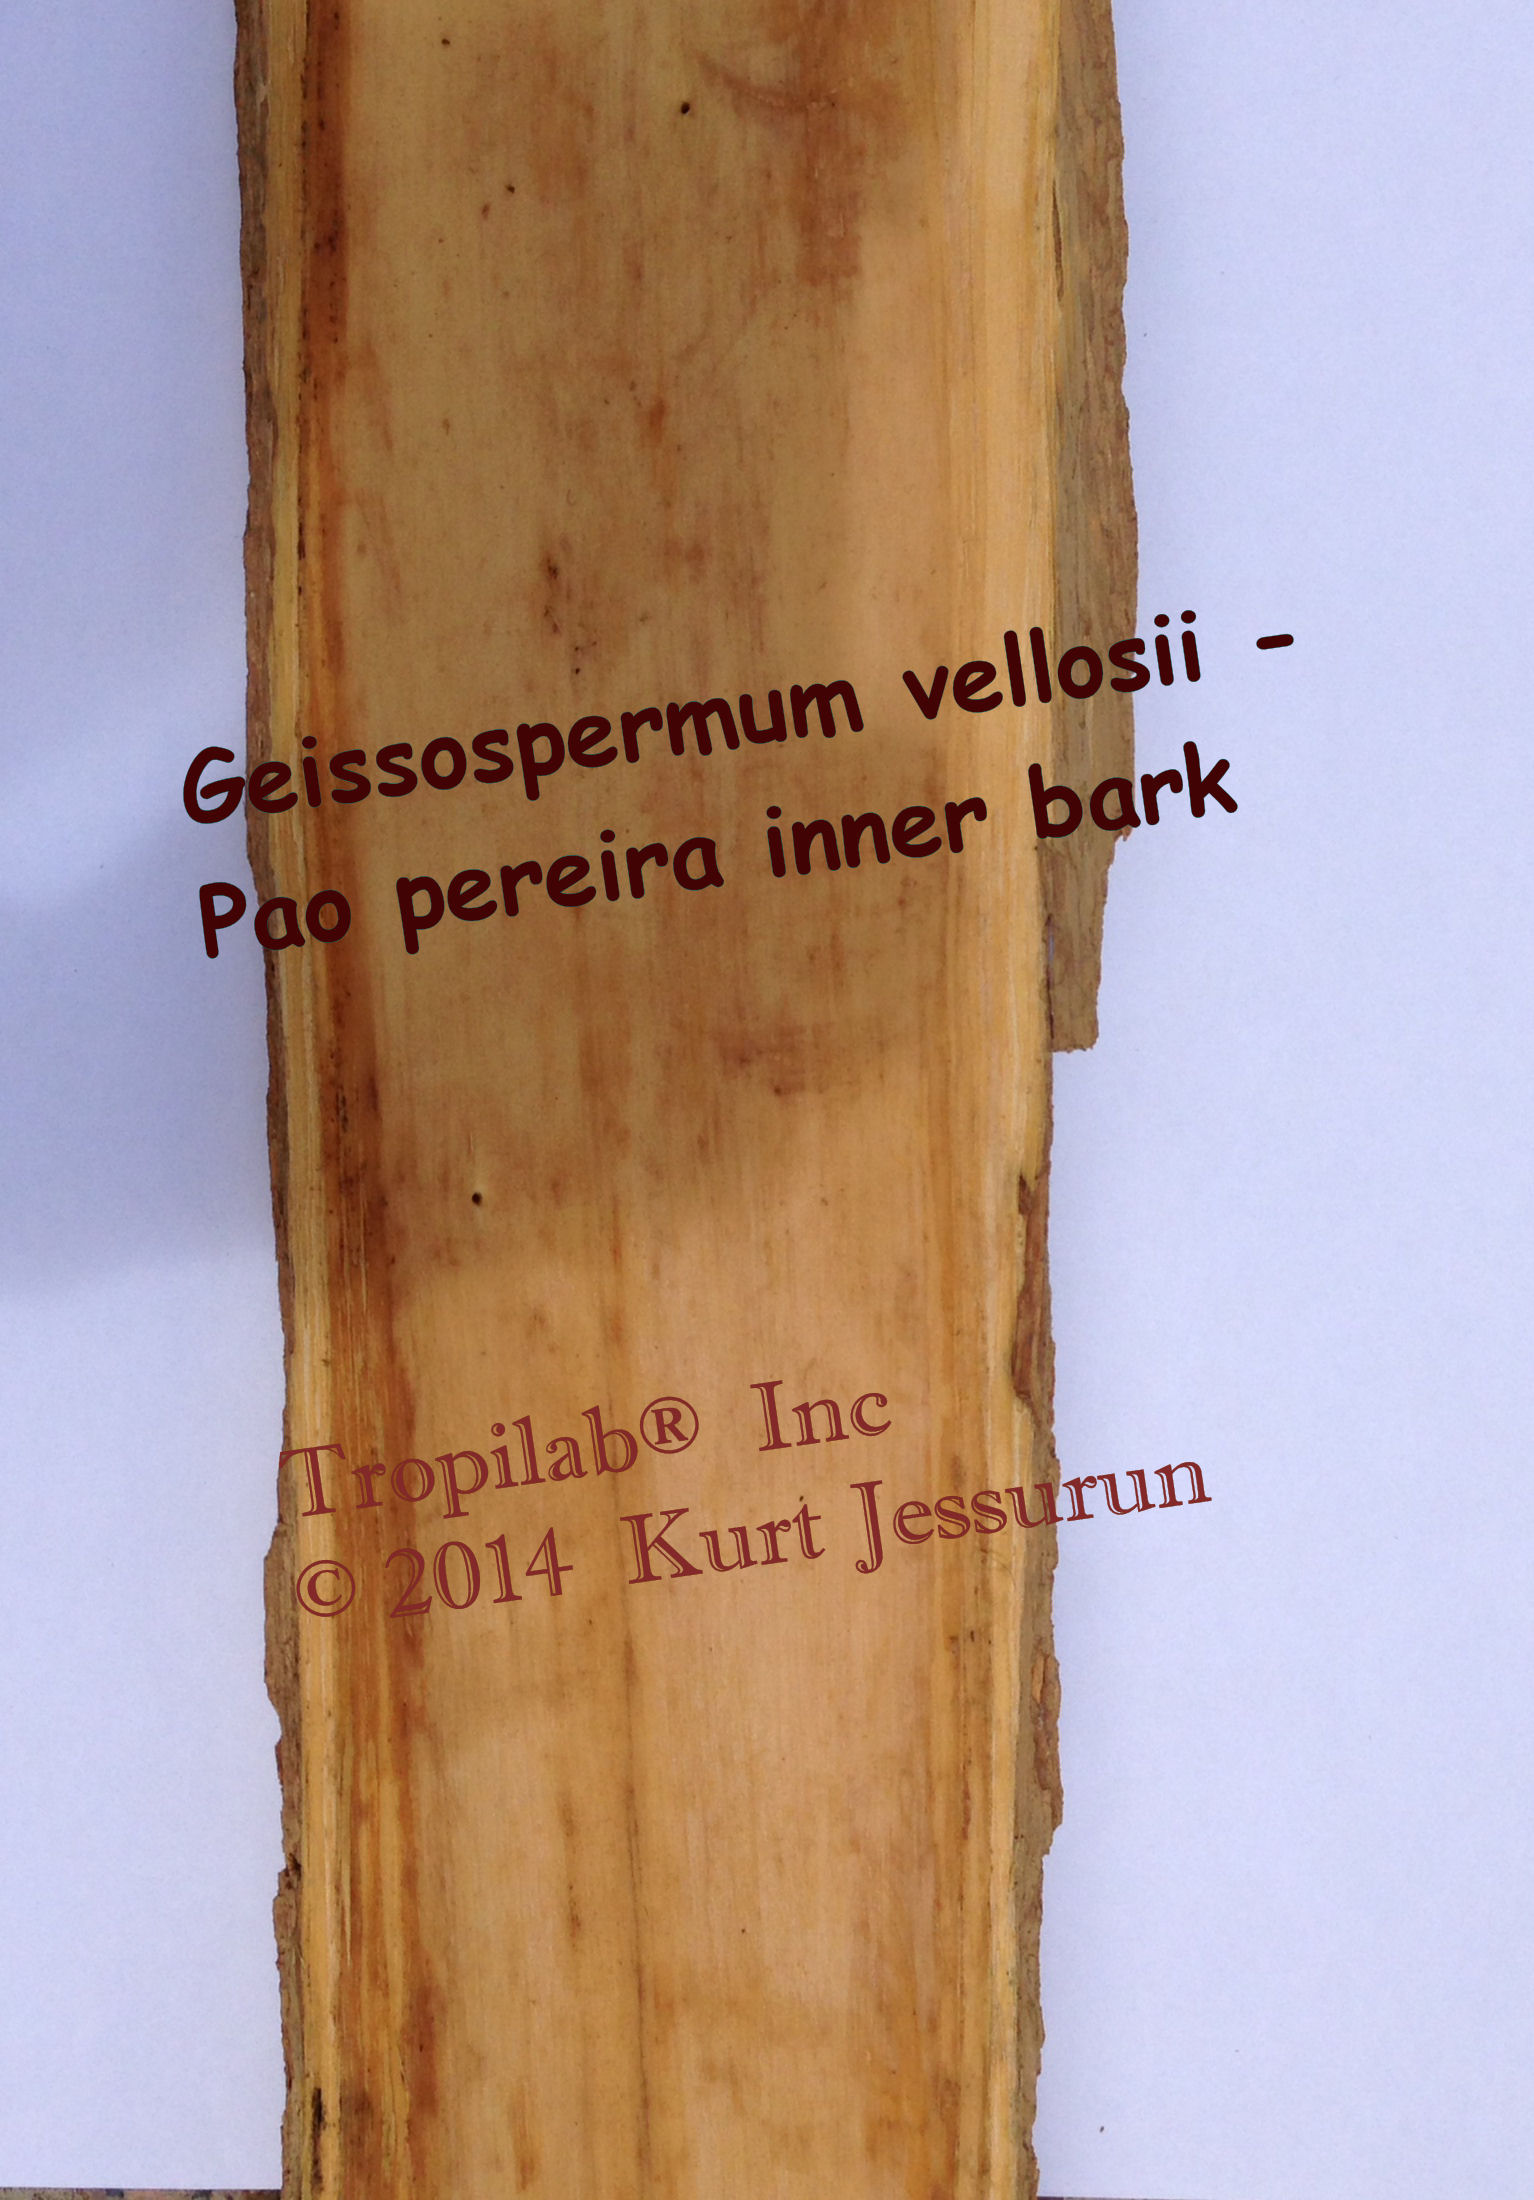 Geissospermum vellosii inner bark